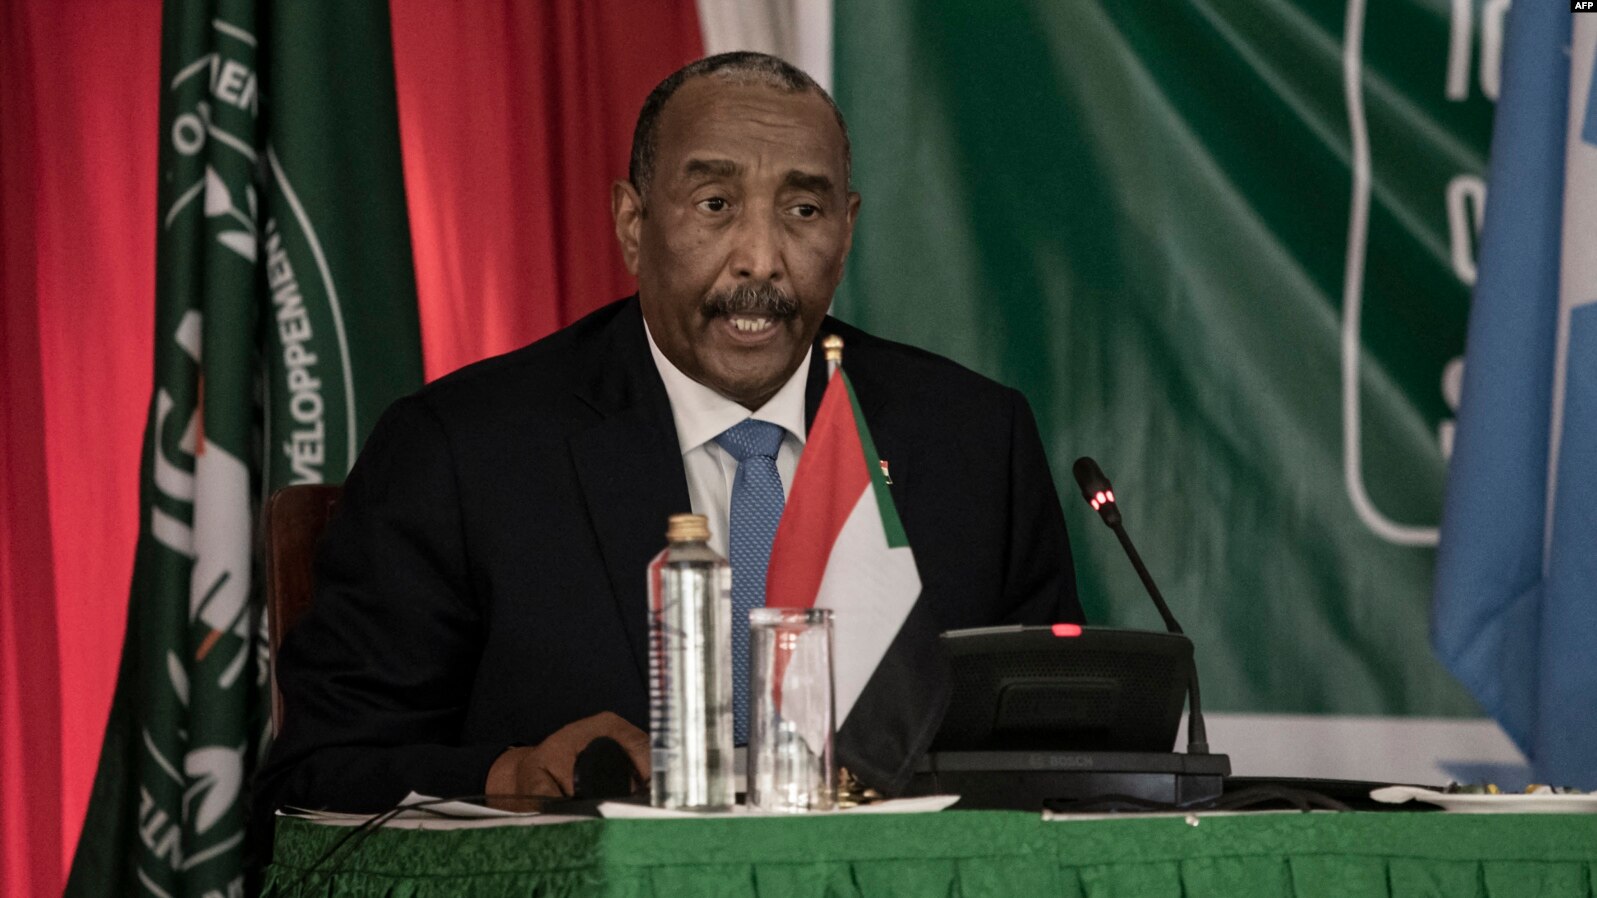 Les civils refusent de collaborer avec l’armée soudanaise